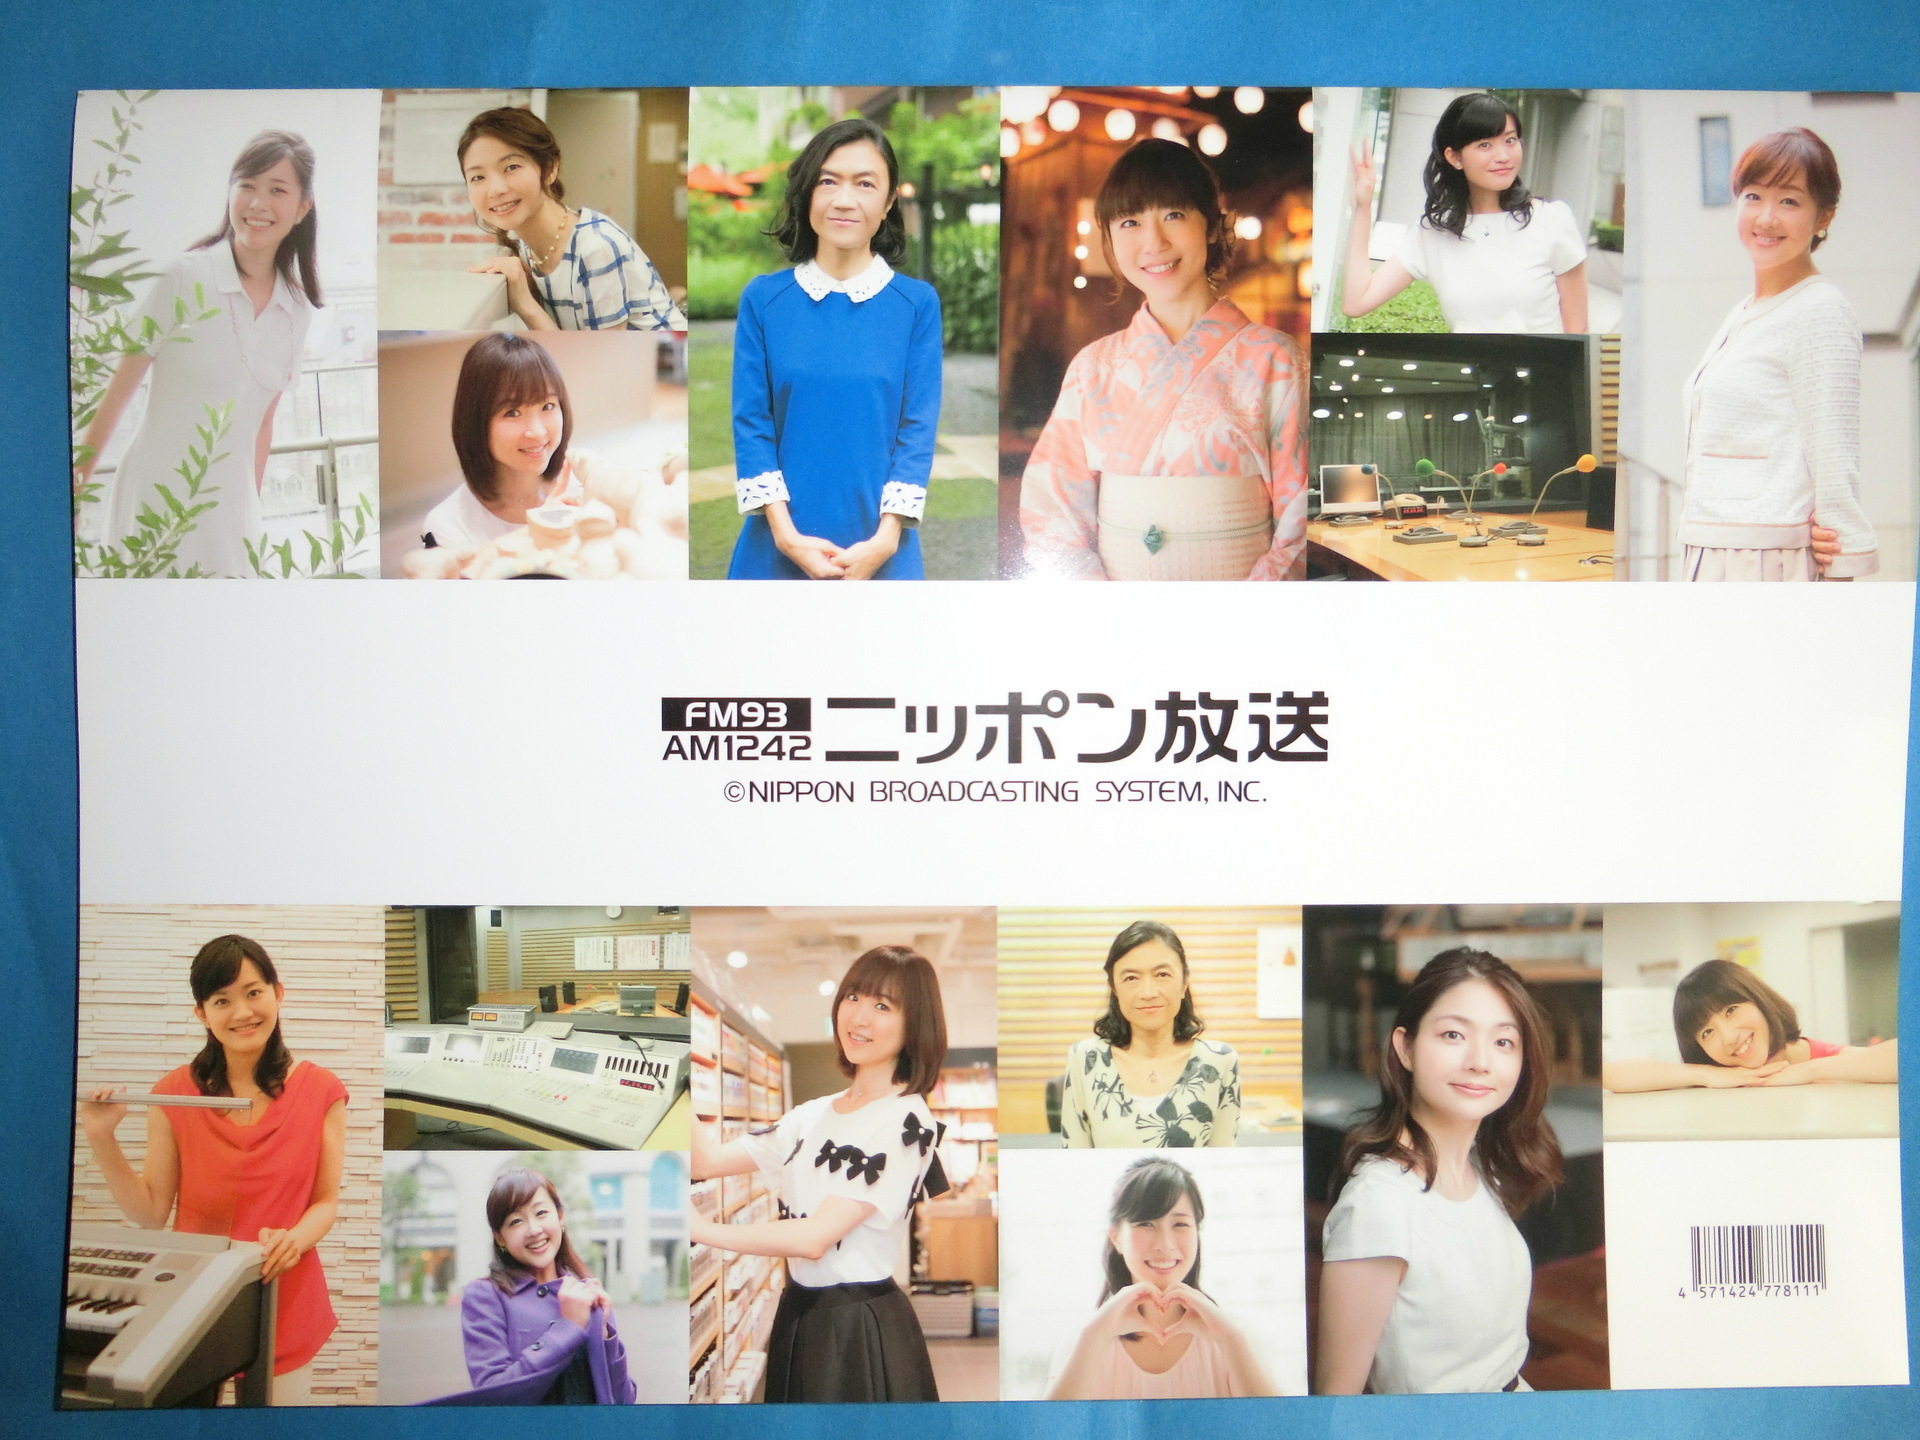 写真付き ニッポン放送女性アナウンサーカレンダー 16 届きました 付録の アナウンサープロフィールポスター は早速 部屋の壁に貼って 楽しんでますよ